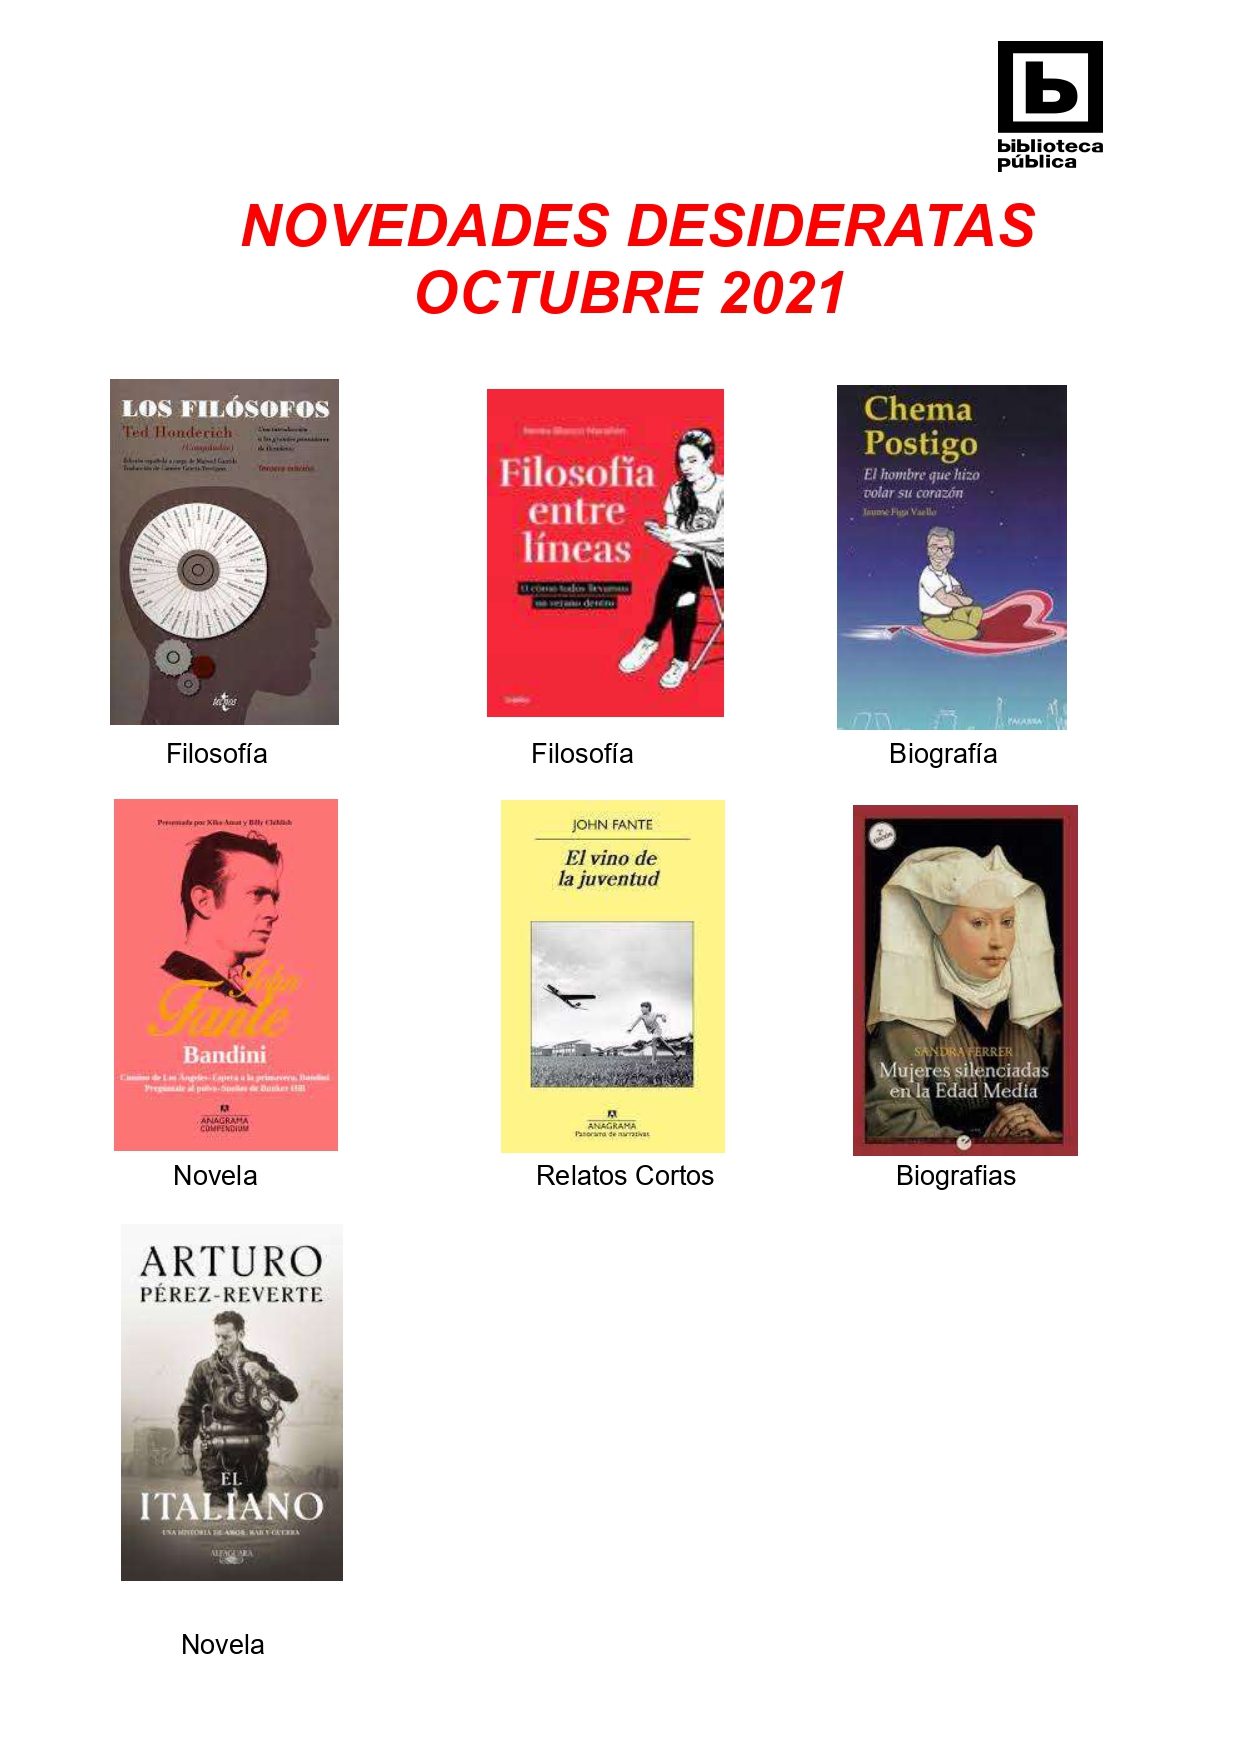 NOVEDADES DESIDERATAS DE OCTUBRE 2021